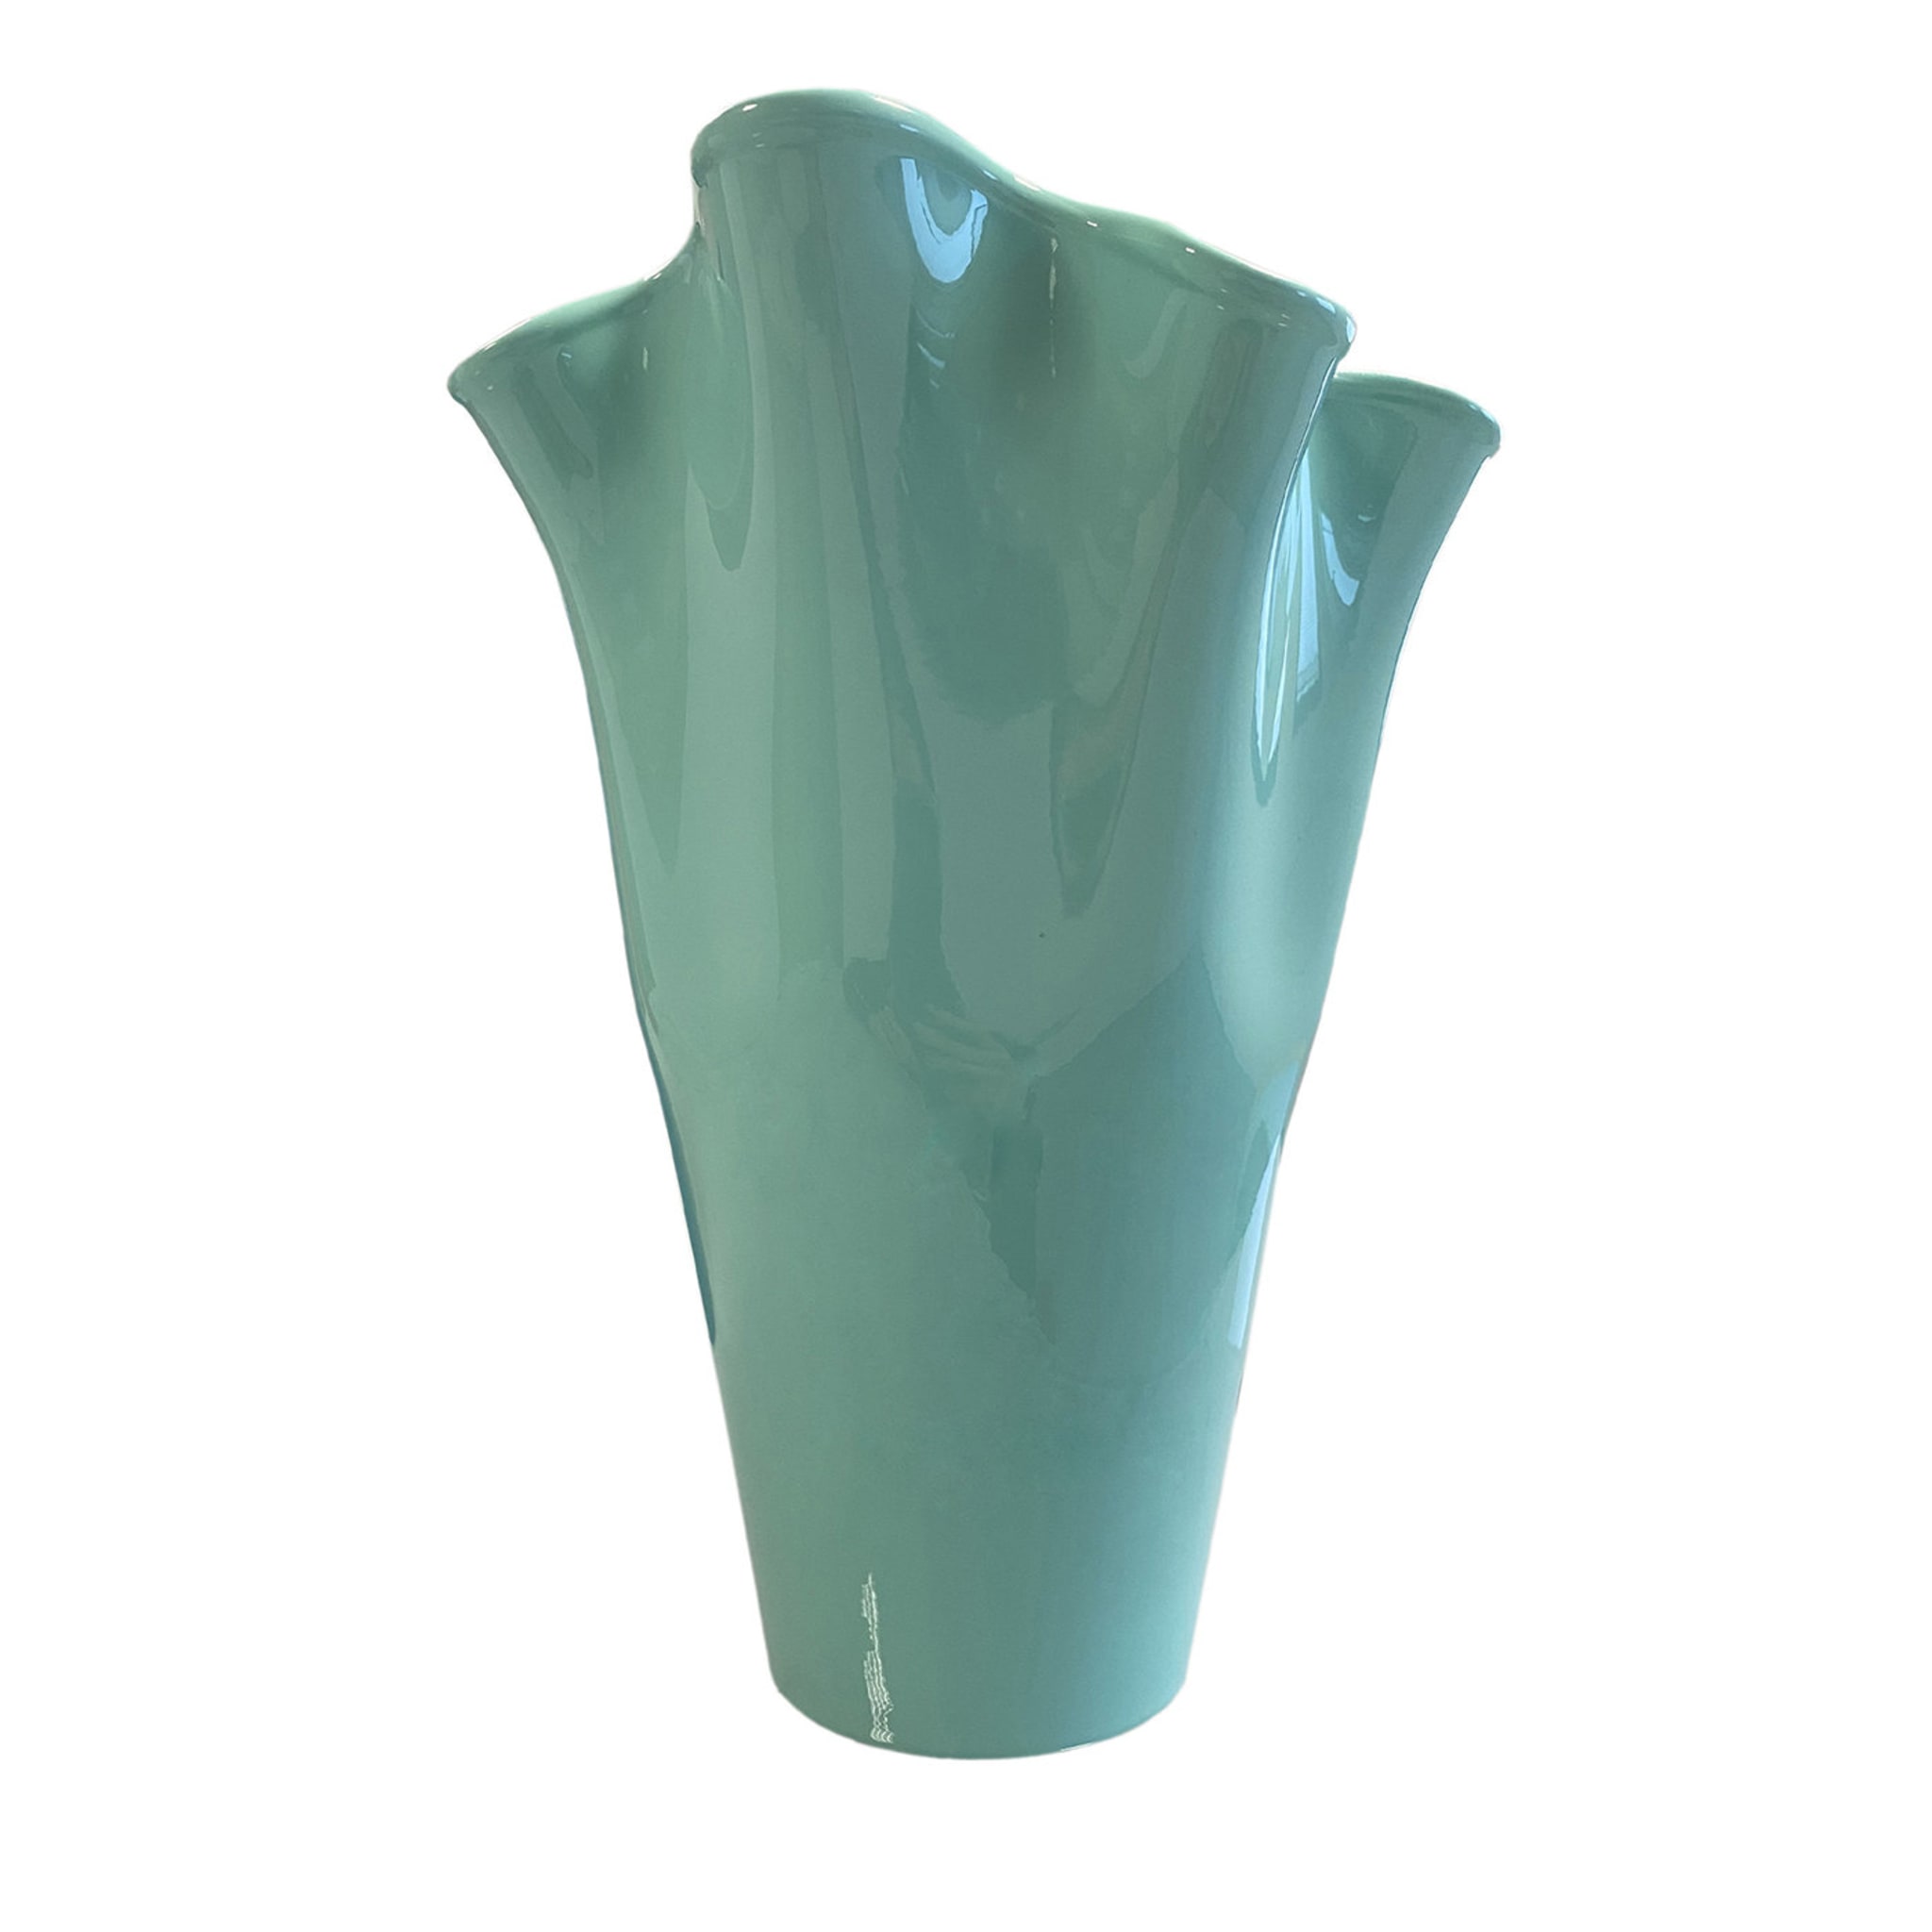 Velluto Hellblaue Vase von Fabio Casali - Hauptansicht